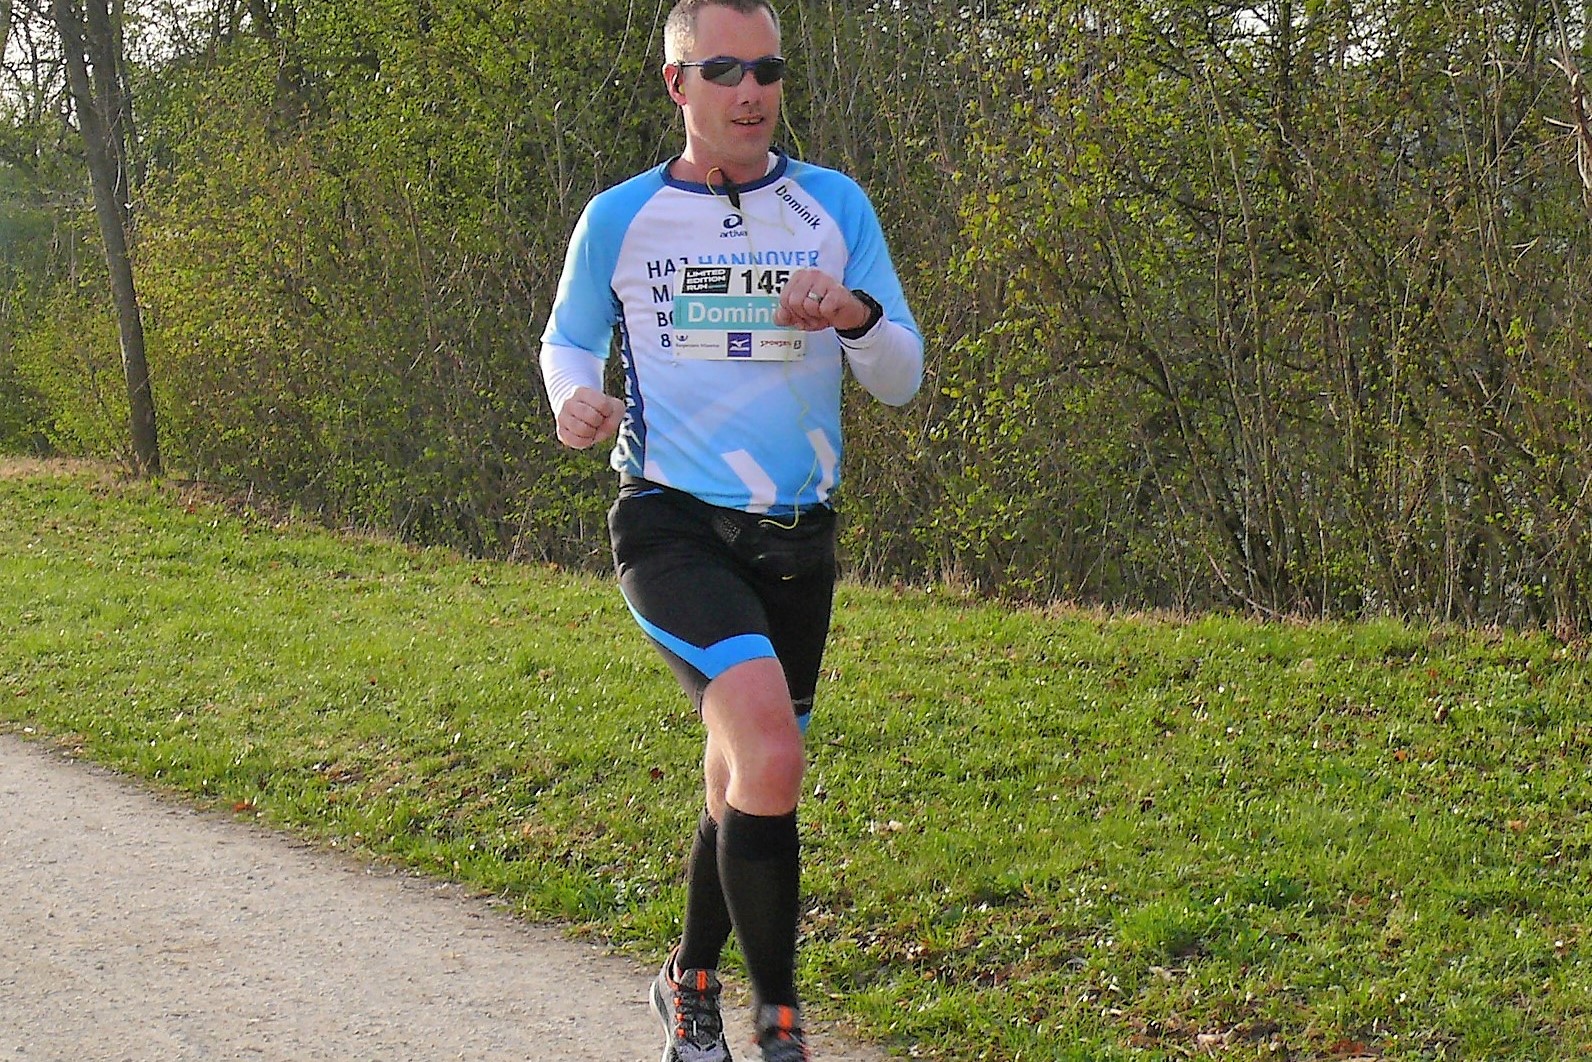 Dominik von Känel ist begeisterter Marathonläufer und es kommt nicht selten vor, dass ihm die besten Ideen bei seiner Lieblingsfreizeitbeschäftigung einfallen.